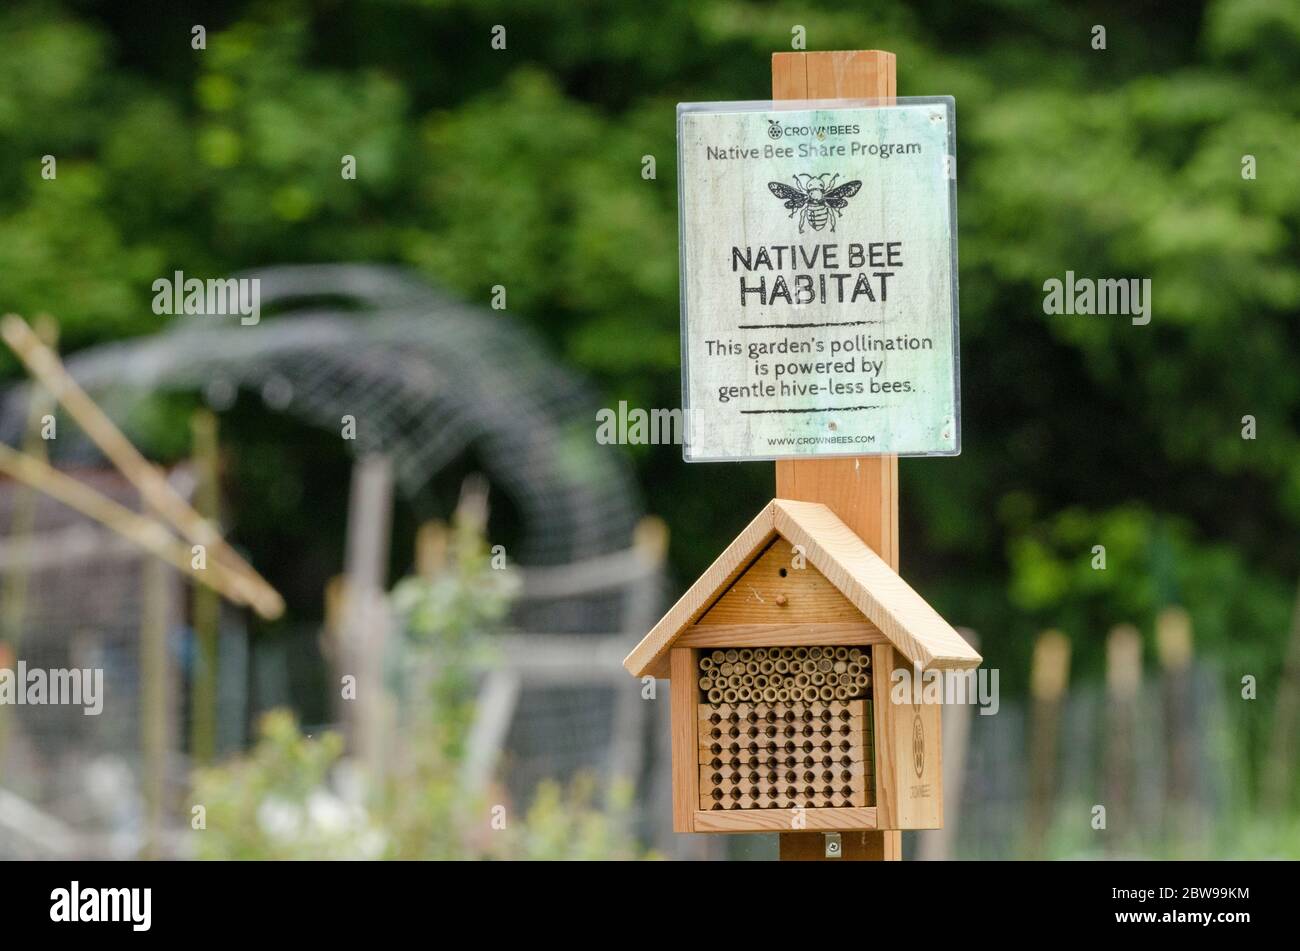 Encima de una casa de madera de abejas, un signo de 'hábitat de abejas nativas' describe una sección en un jardín comunitario plantado para polinizadores. Foto de stock